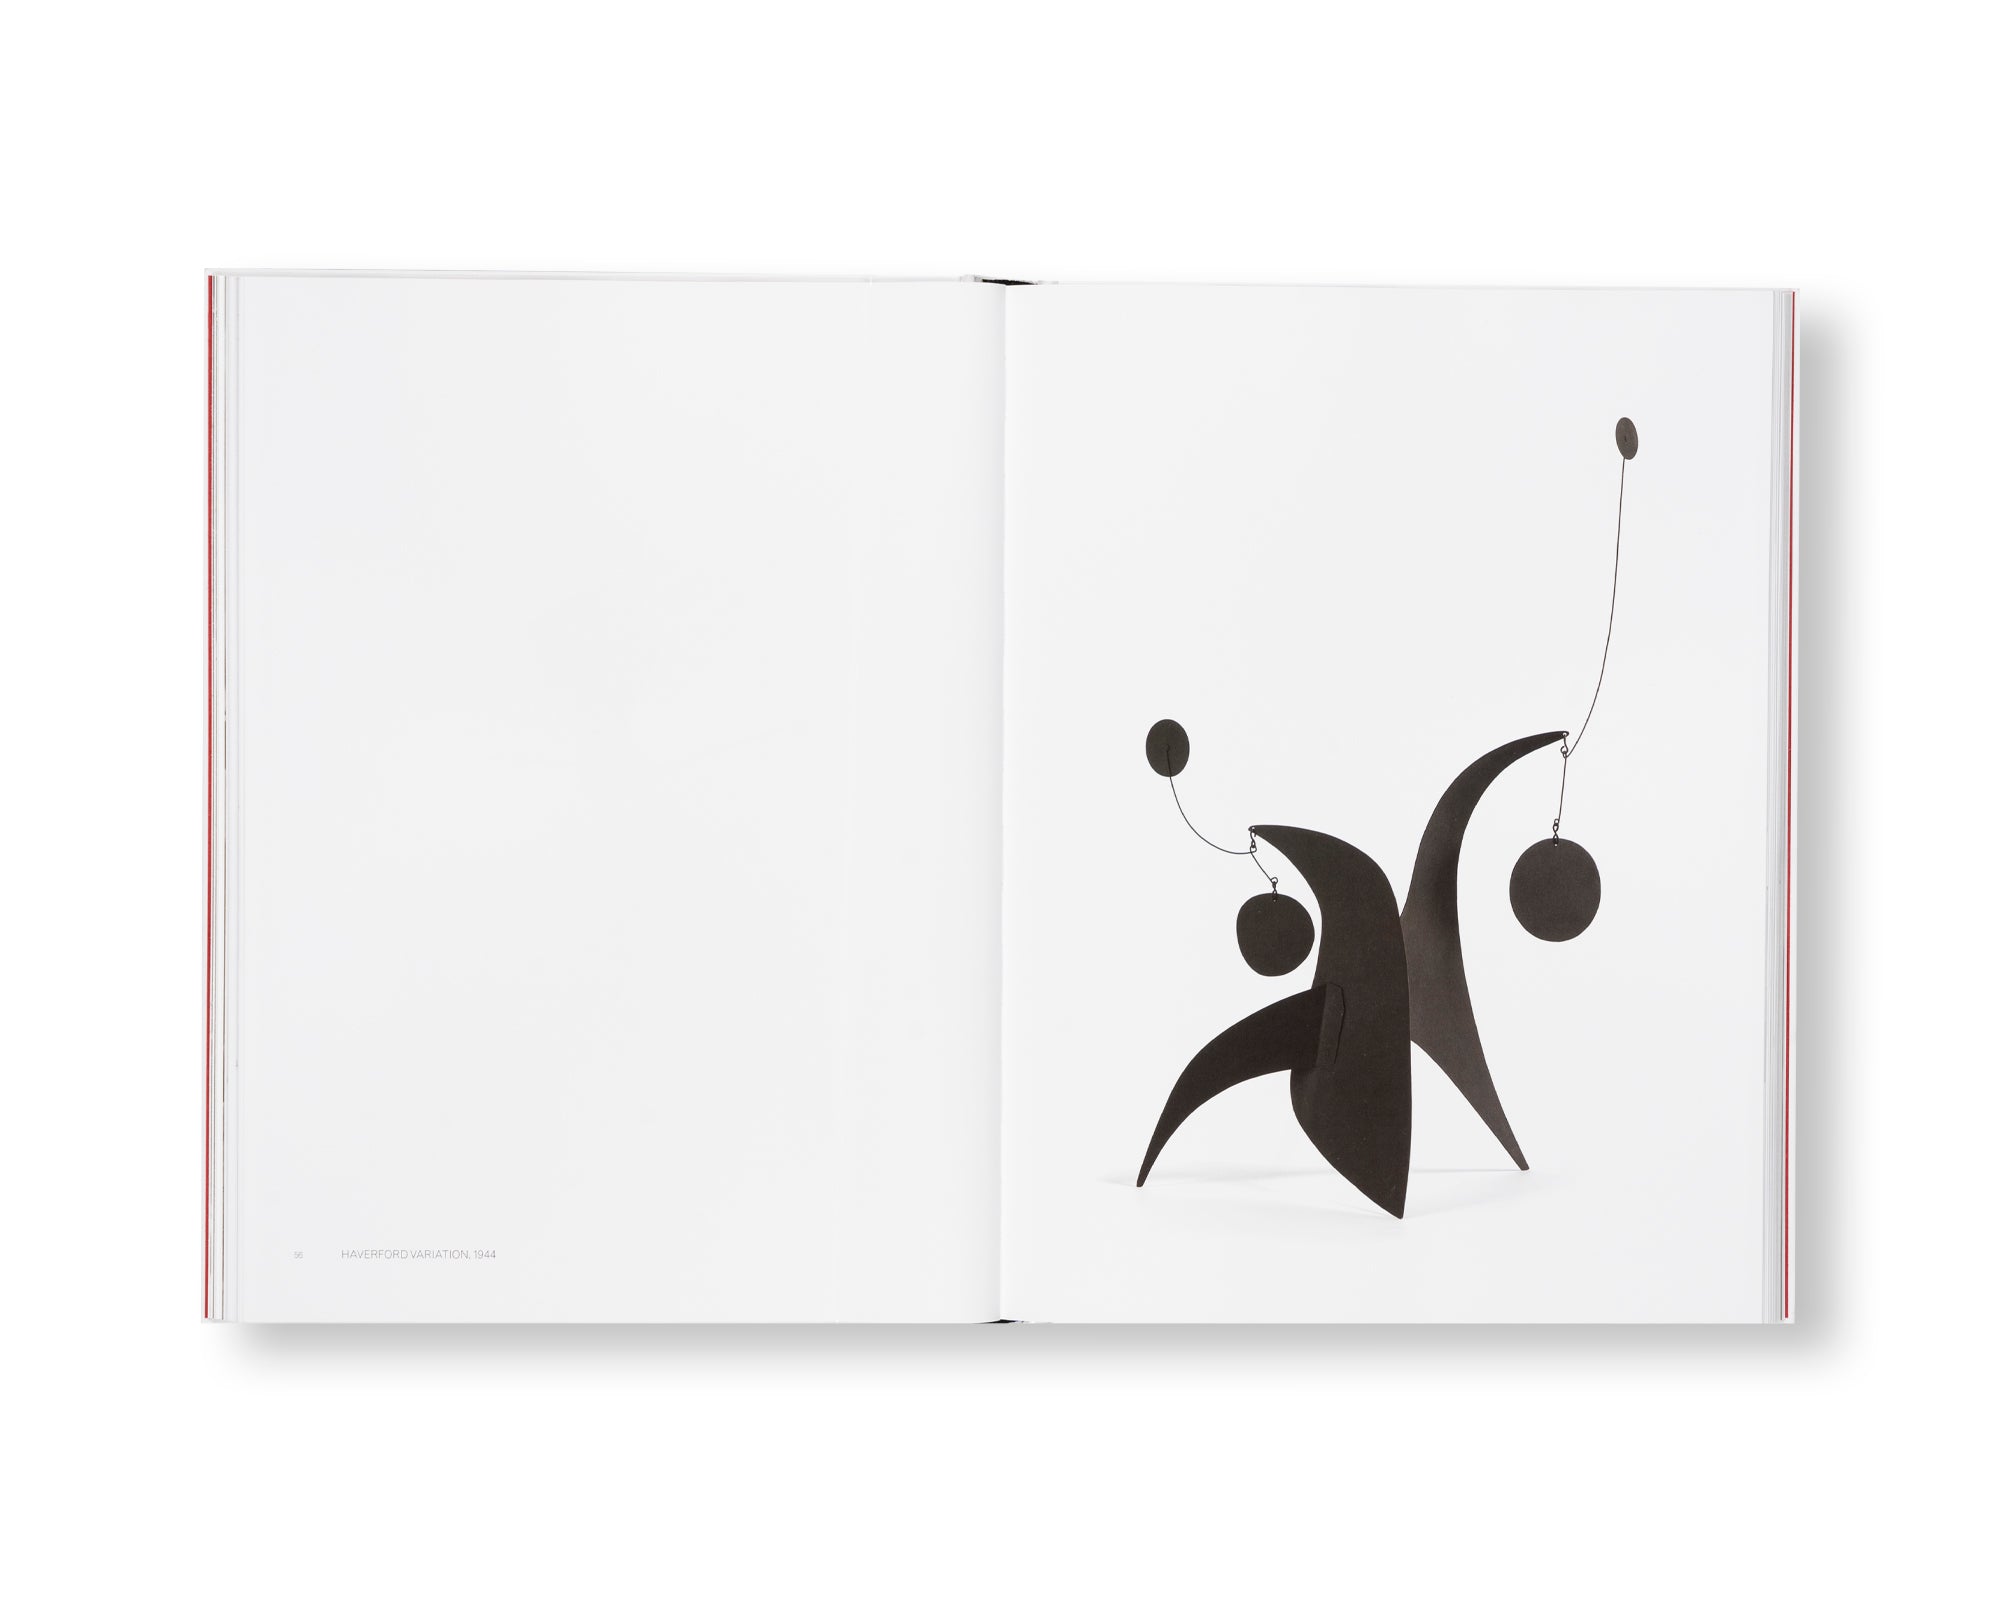 MULTUM IN PARVO by Alexander Calder